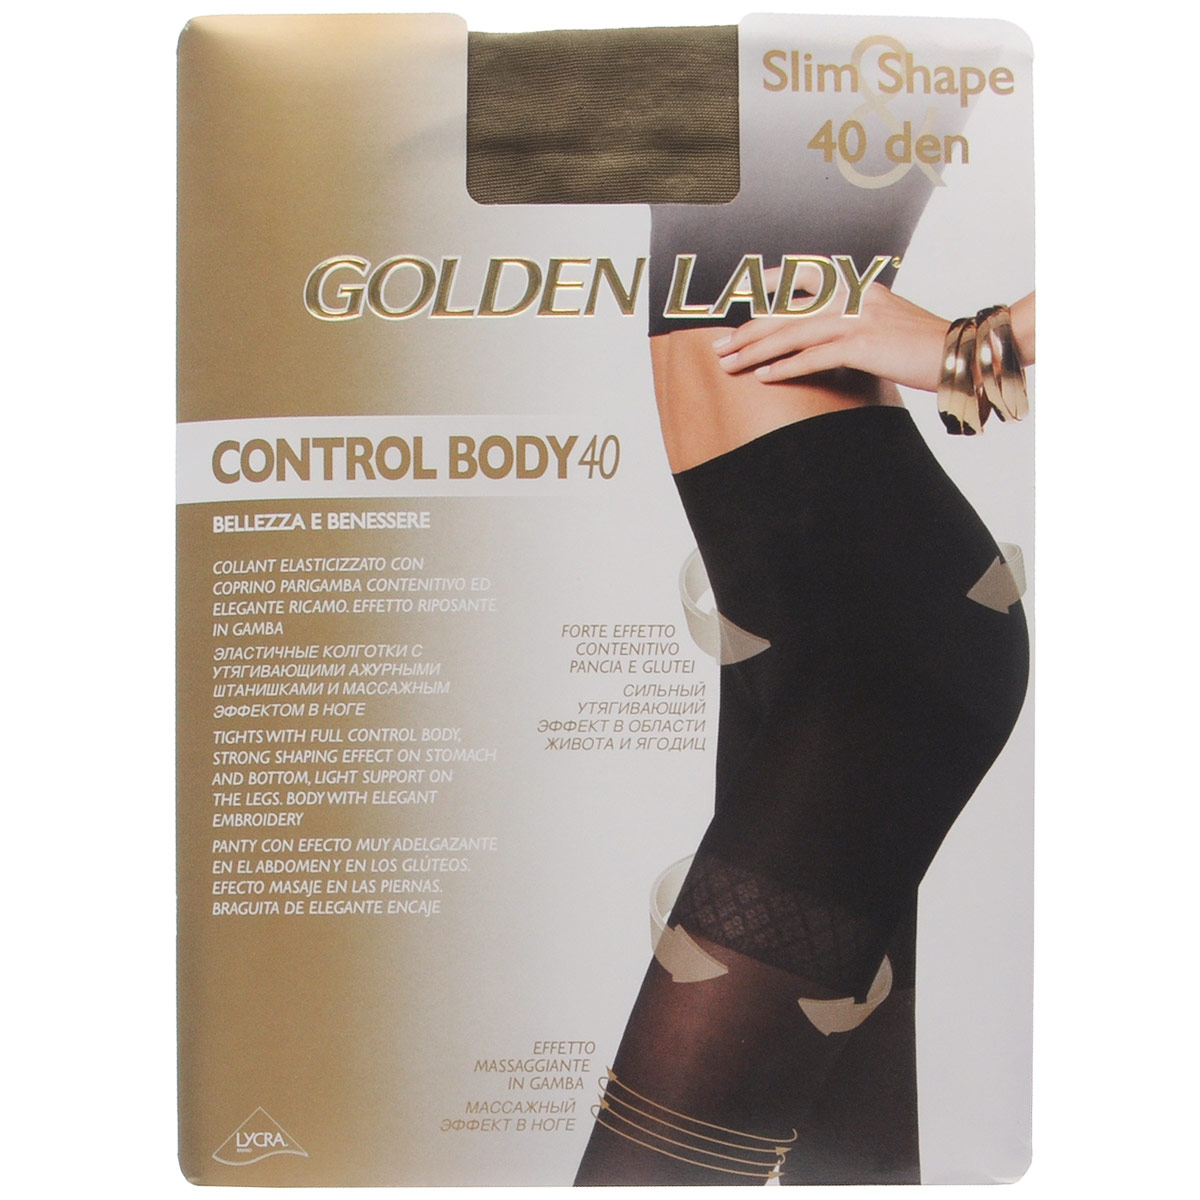 Колготки женские Golden Lady Control Body 40, цвет: Daino (бледно-коричневый). 122KKK. Размер 4 (L)